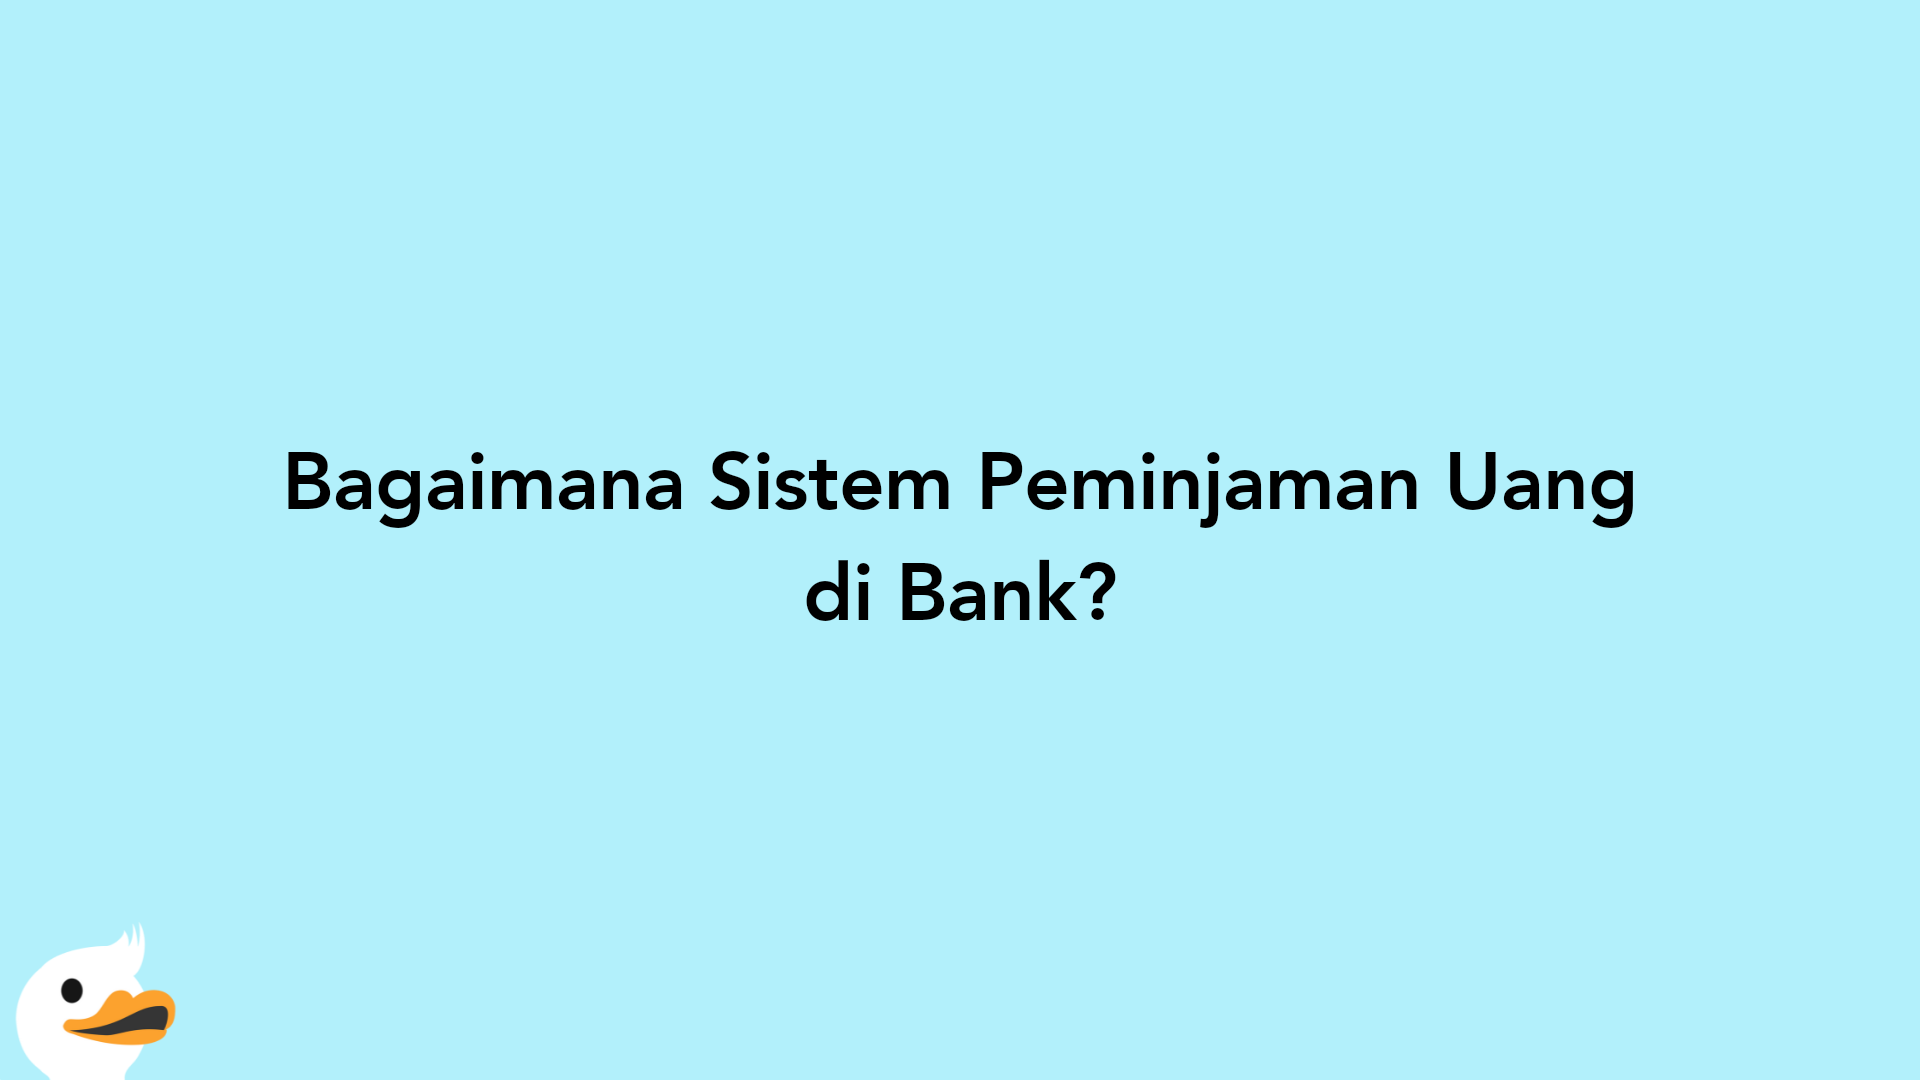 Bagaimana Sistem Peminjaman Uang di Bank?